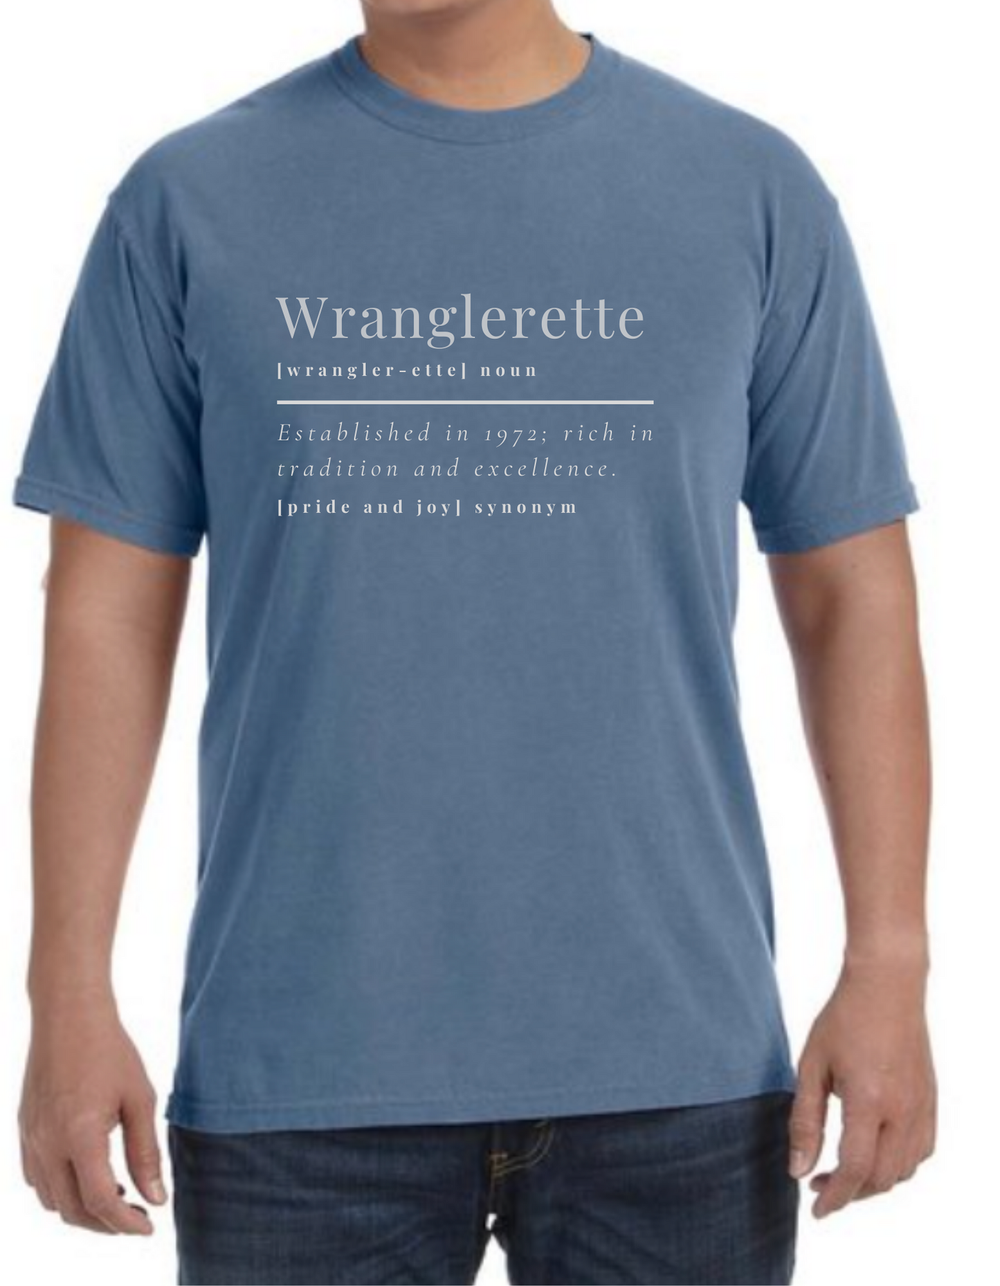 Wranglerette Noun Shirt — Friendswood Wranglerettes